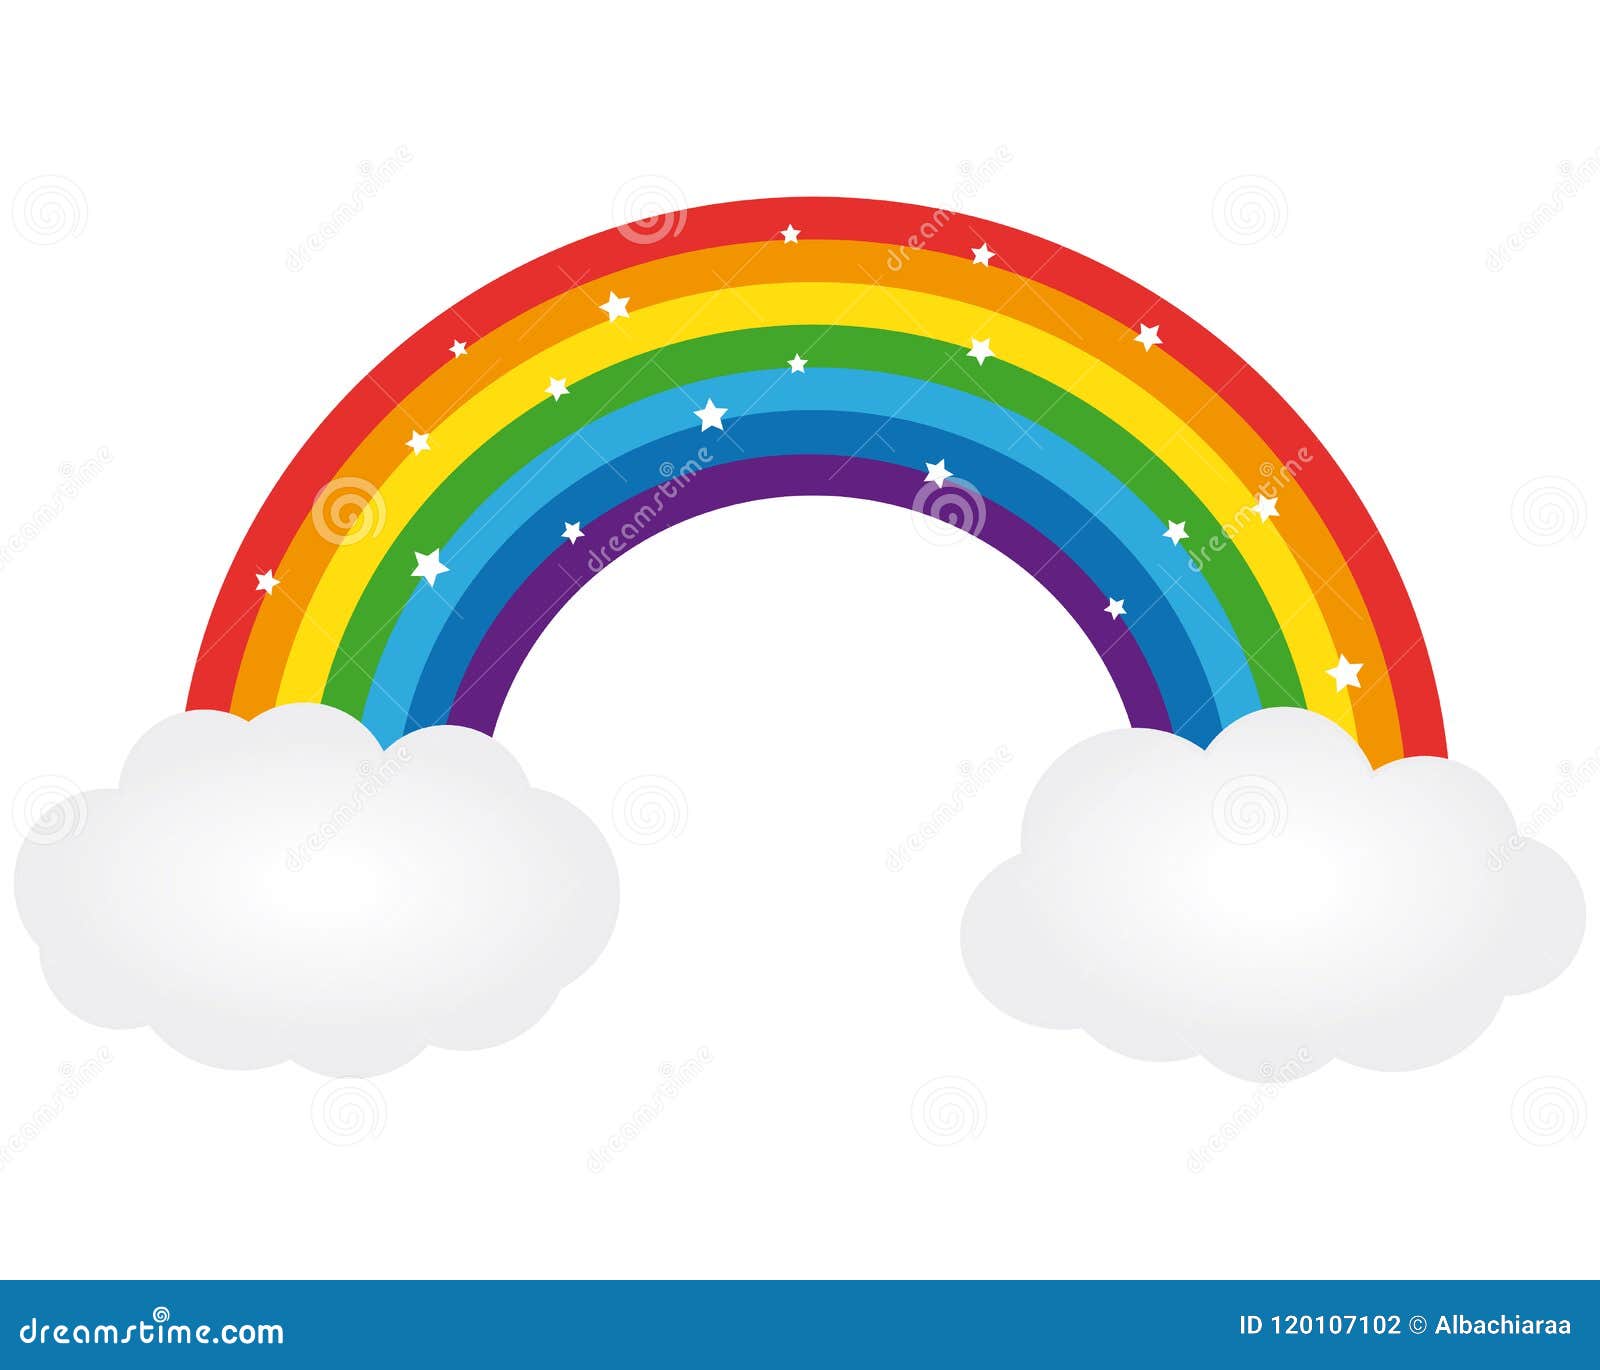 Beautiful Rainbow. Vector Illustration. Stock Vector ...